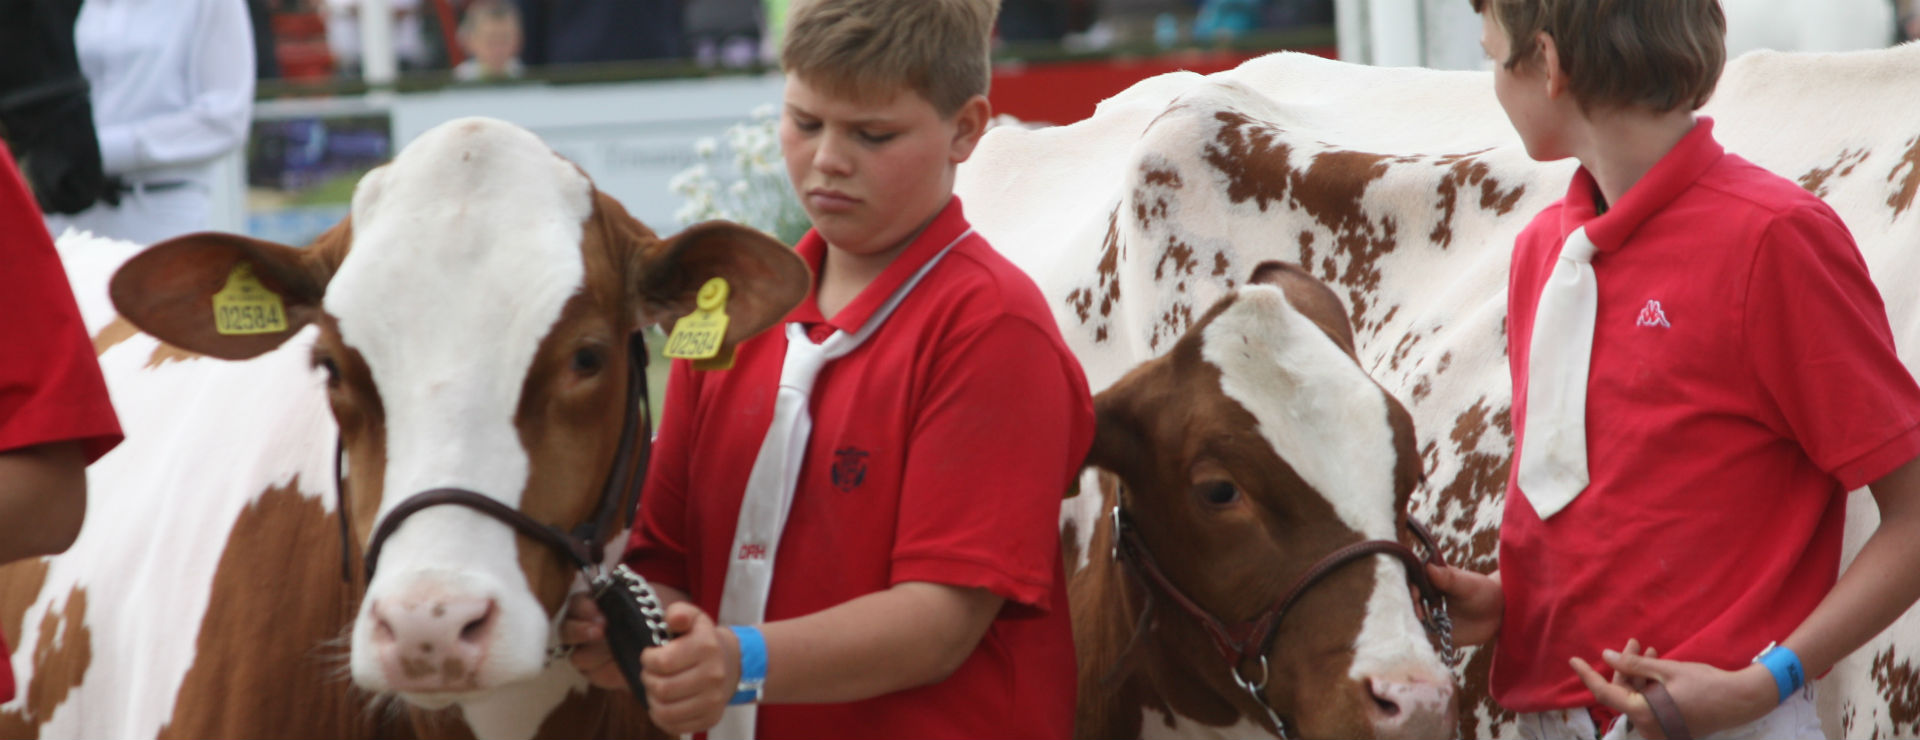 Ny konkurrence for unge med interesse for kvæg og dyrskue